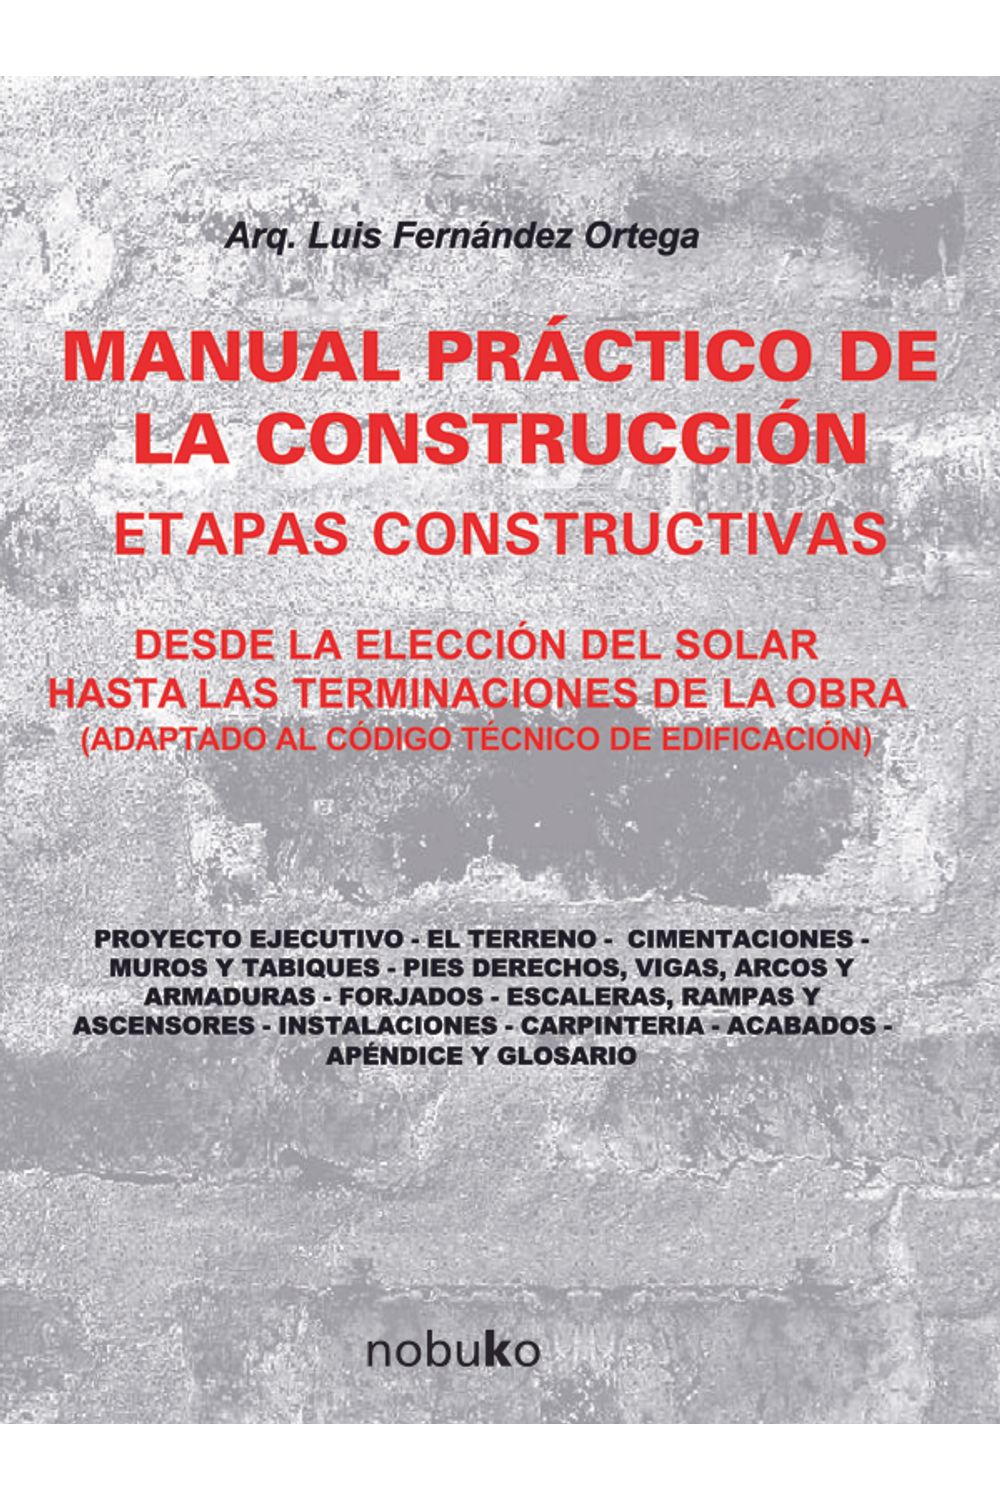 bm-manual-practico-de-la-construccion-nobukodiseno-editorial-9789875842779